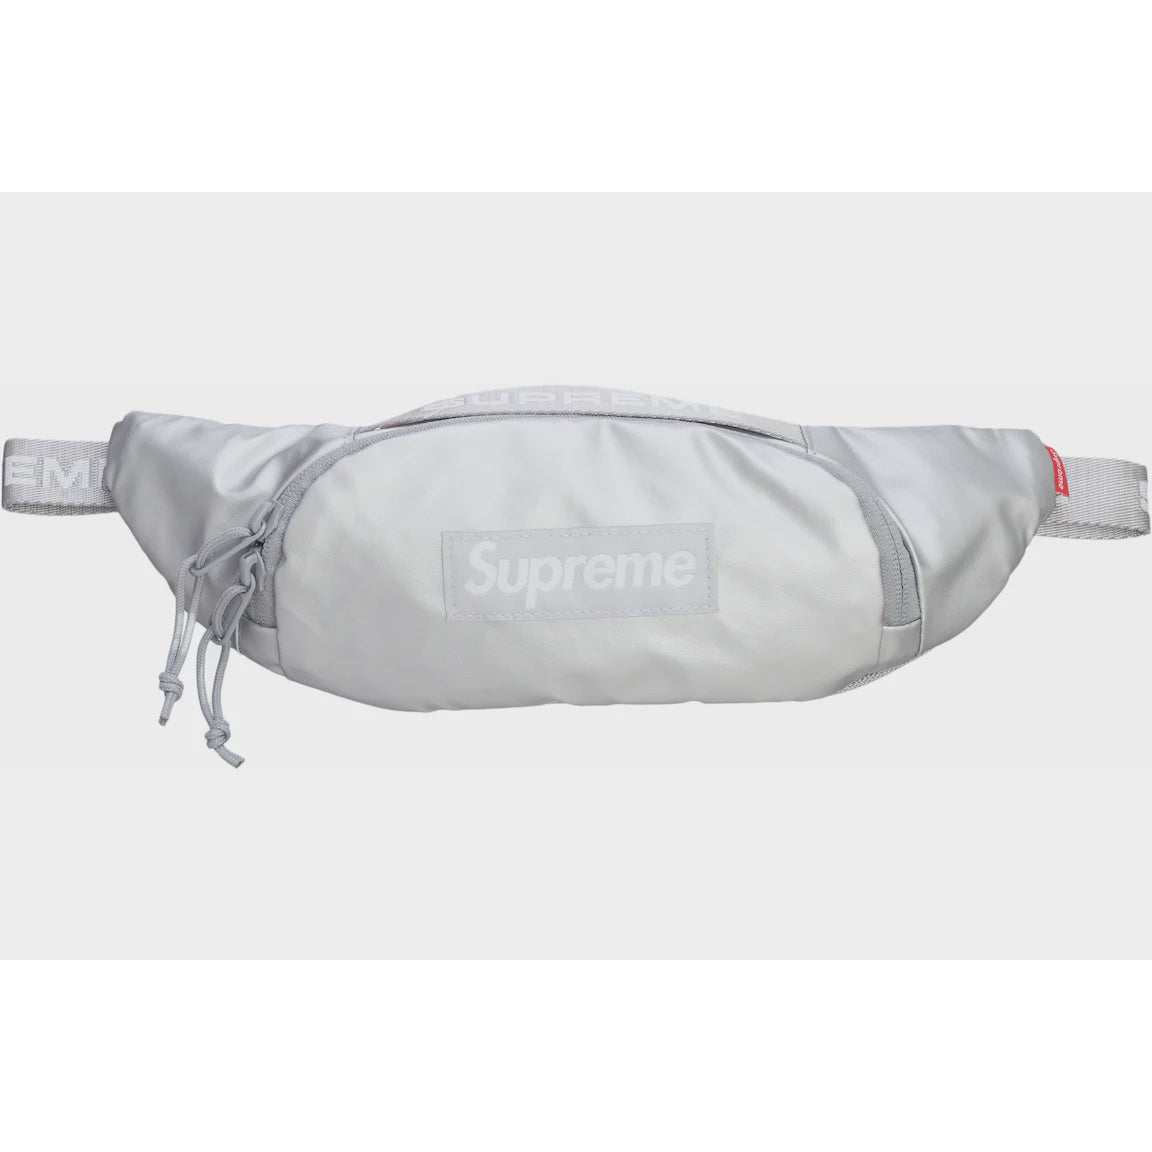 Small Waist Bag - fall winter 2022 - Supreme